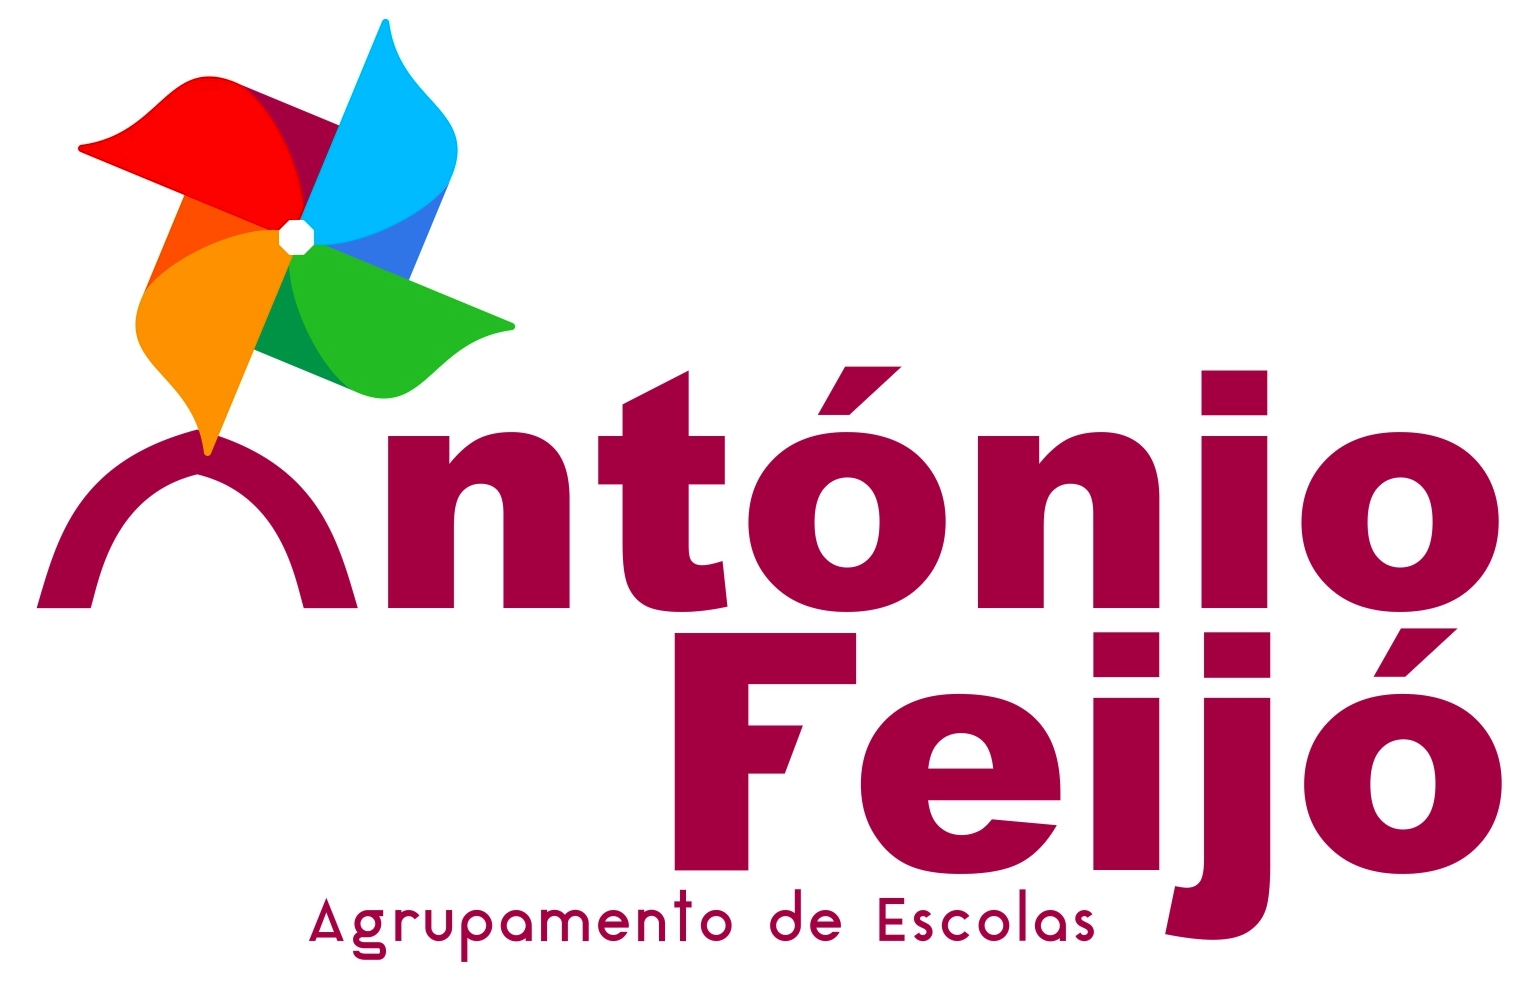 Balanço Social do Agrupamento António Feijó relativo ao ano 2021